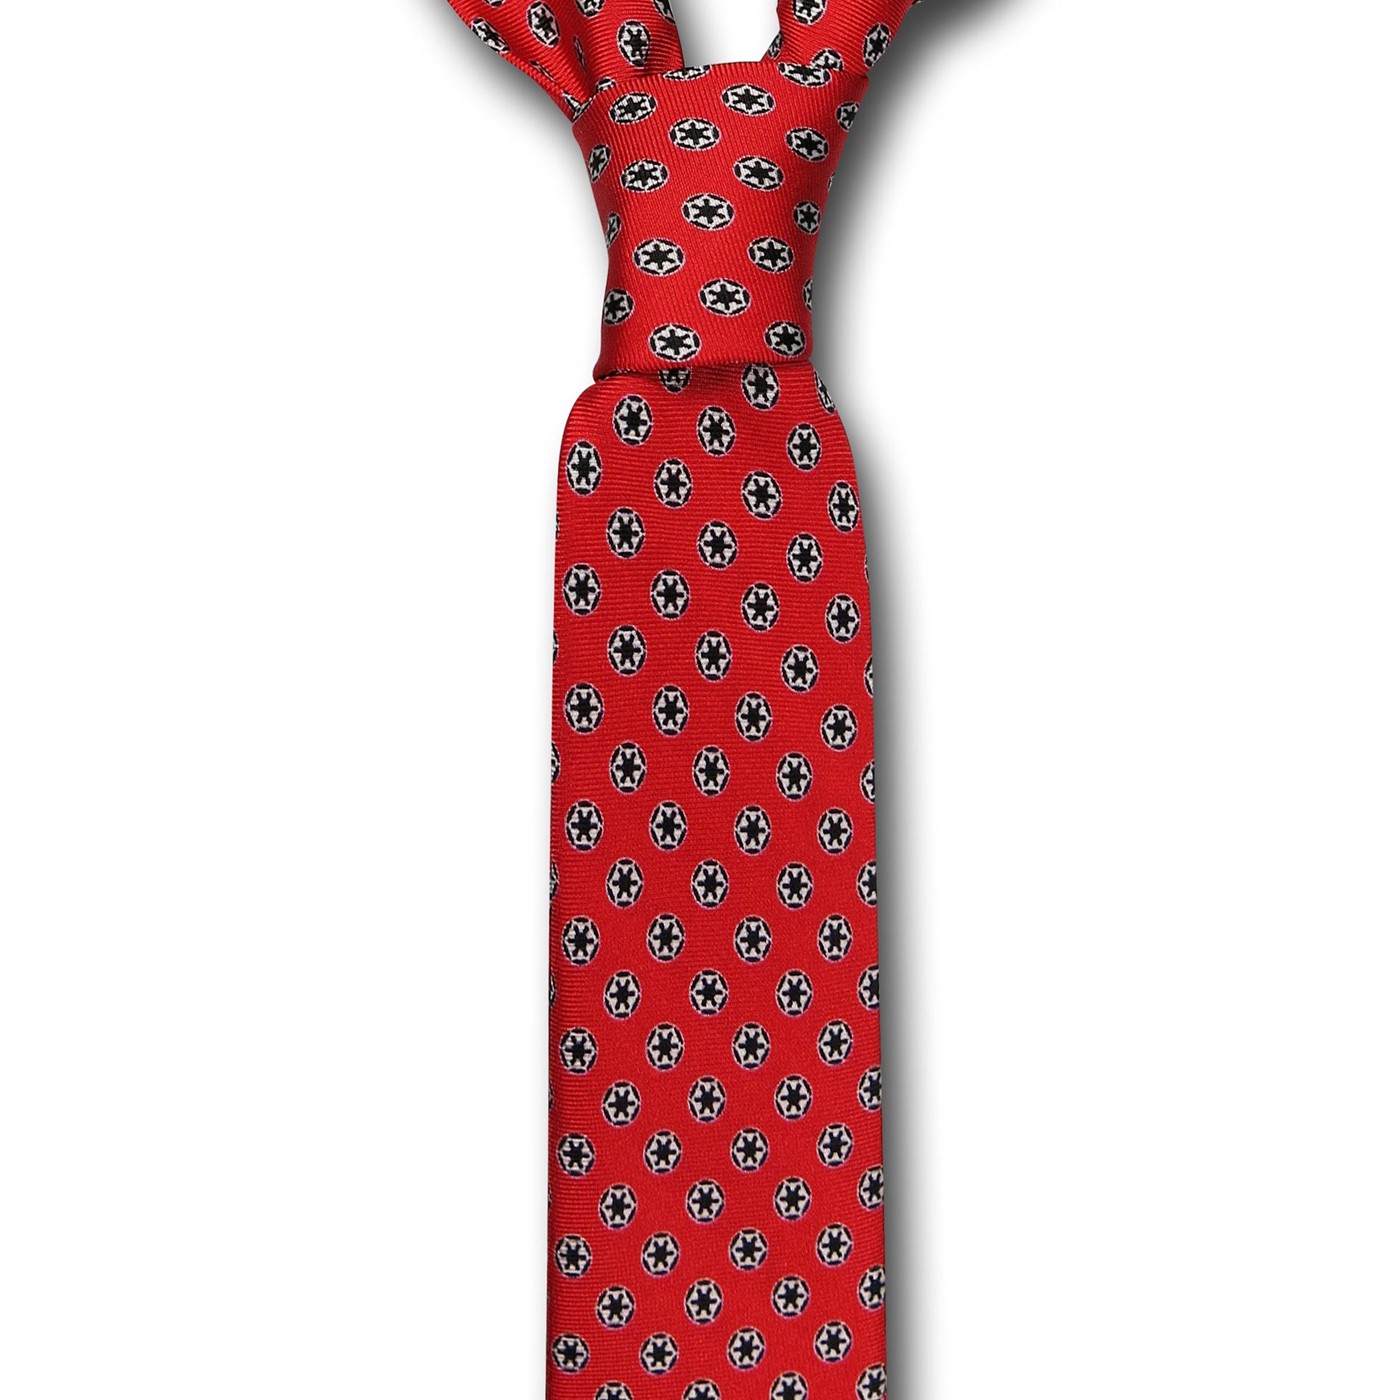 Star Wars Imperial Red Skinny Tie